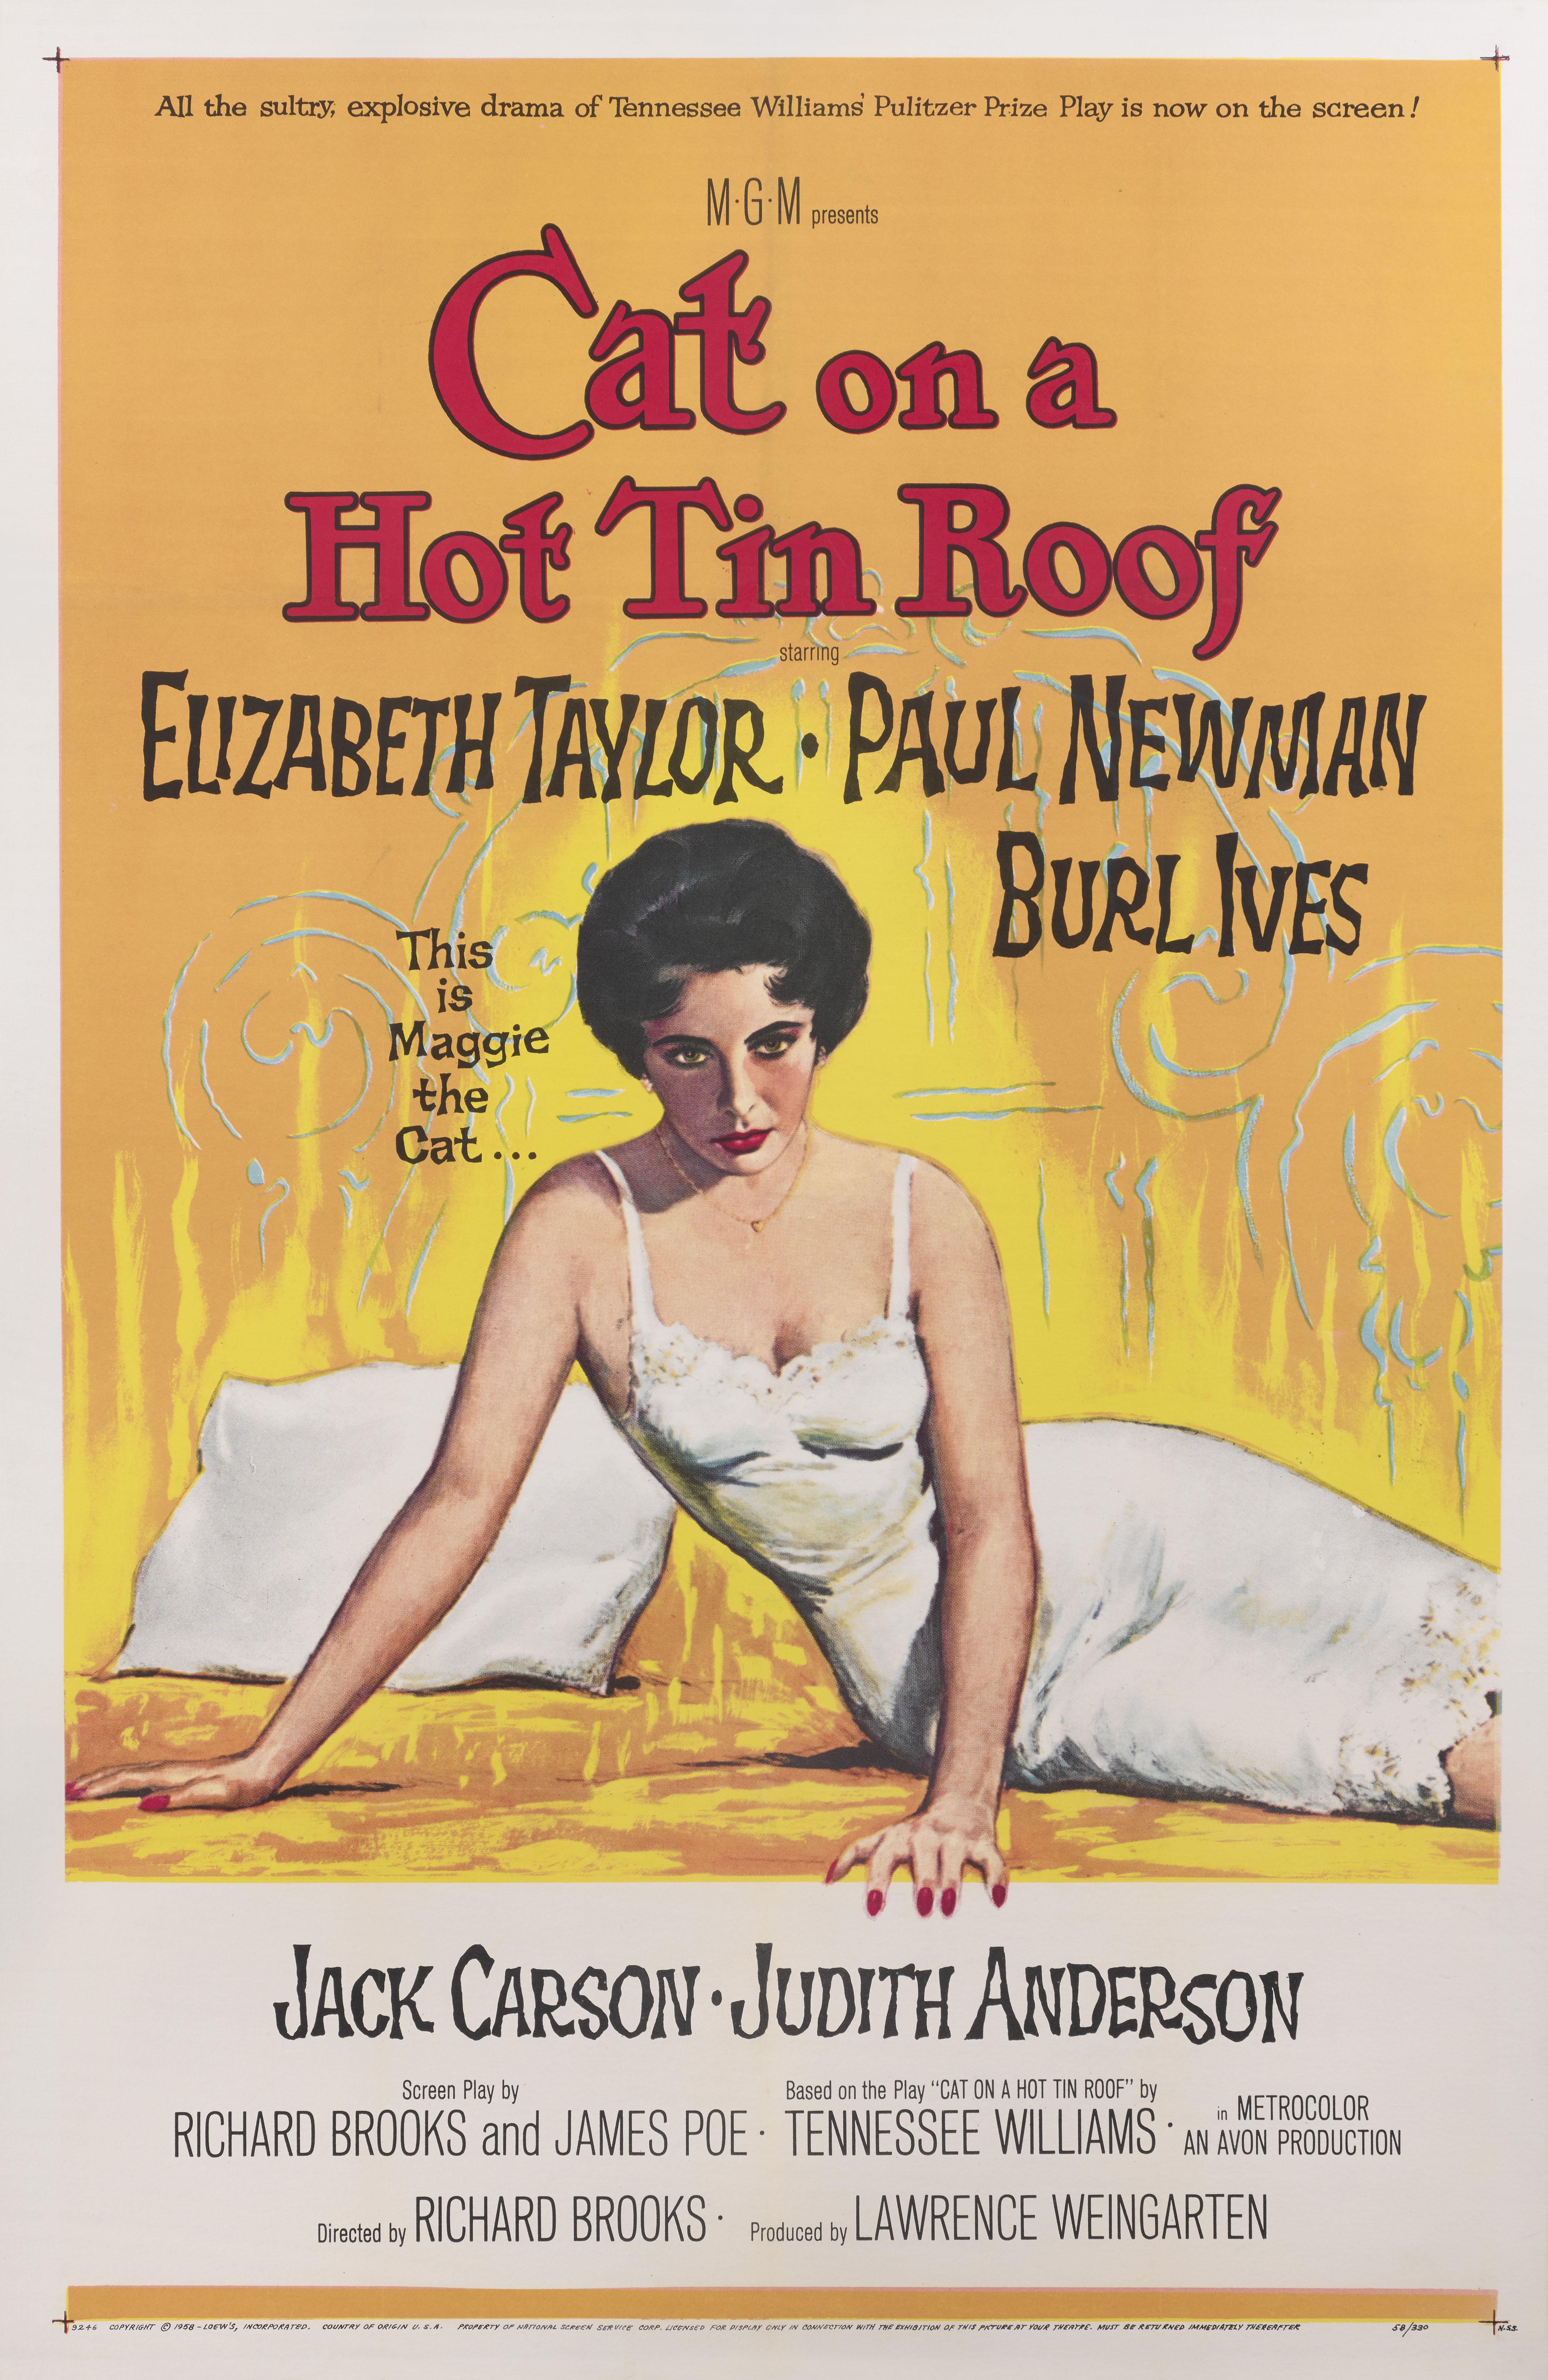 Originales amerikanisches Filmplakat für das Drama von 1958 mit Elizabeth Taylor und Paul Newman in den Hauptrollen.
Die Regie bei diesem Film führte Richard Brooks.
Dieses Plakat ist Erhaltung Leinen zurück und es würde in einem sehr starken Rohr